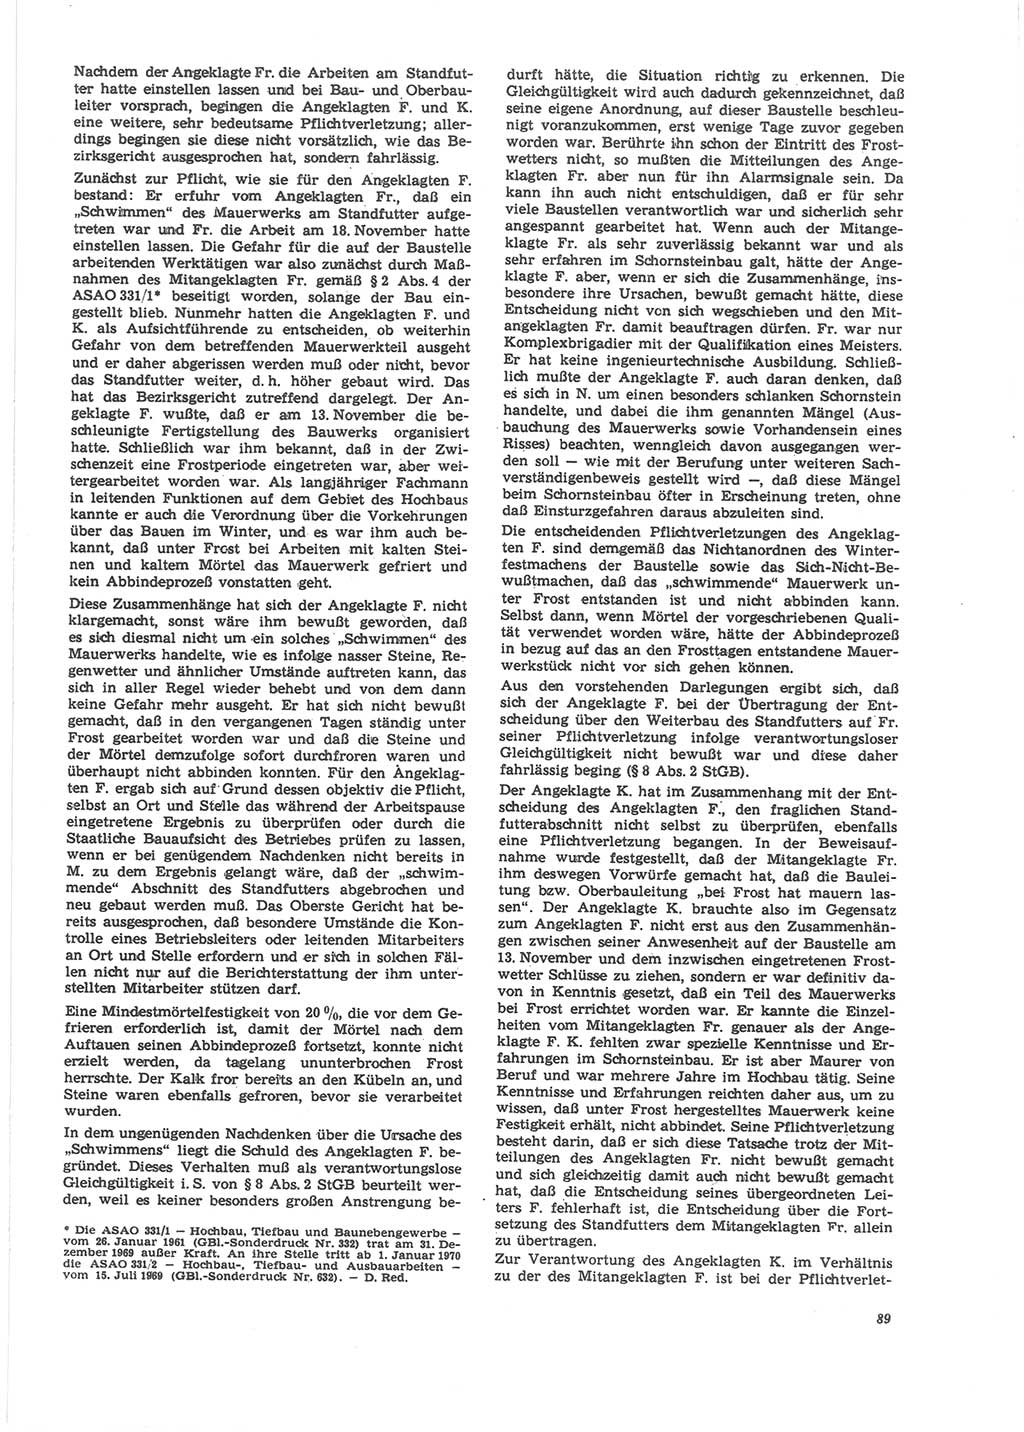 Neue Justiz (NJ), Zeitschrift für Recht und Rechtswissenschaft [Deutsche Demokratische Republik (DDR)], 24. Jahrgang 1970, Seite 89 (NJ DDR 1970, S. 89)